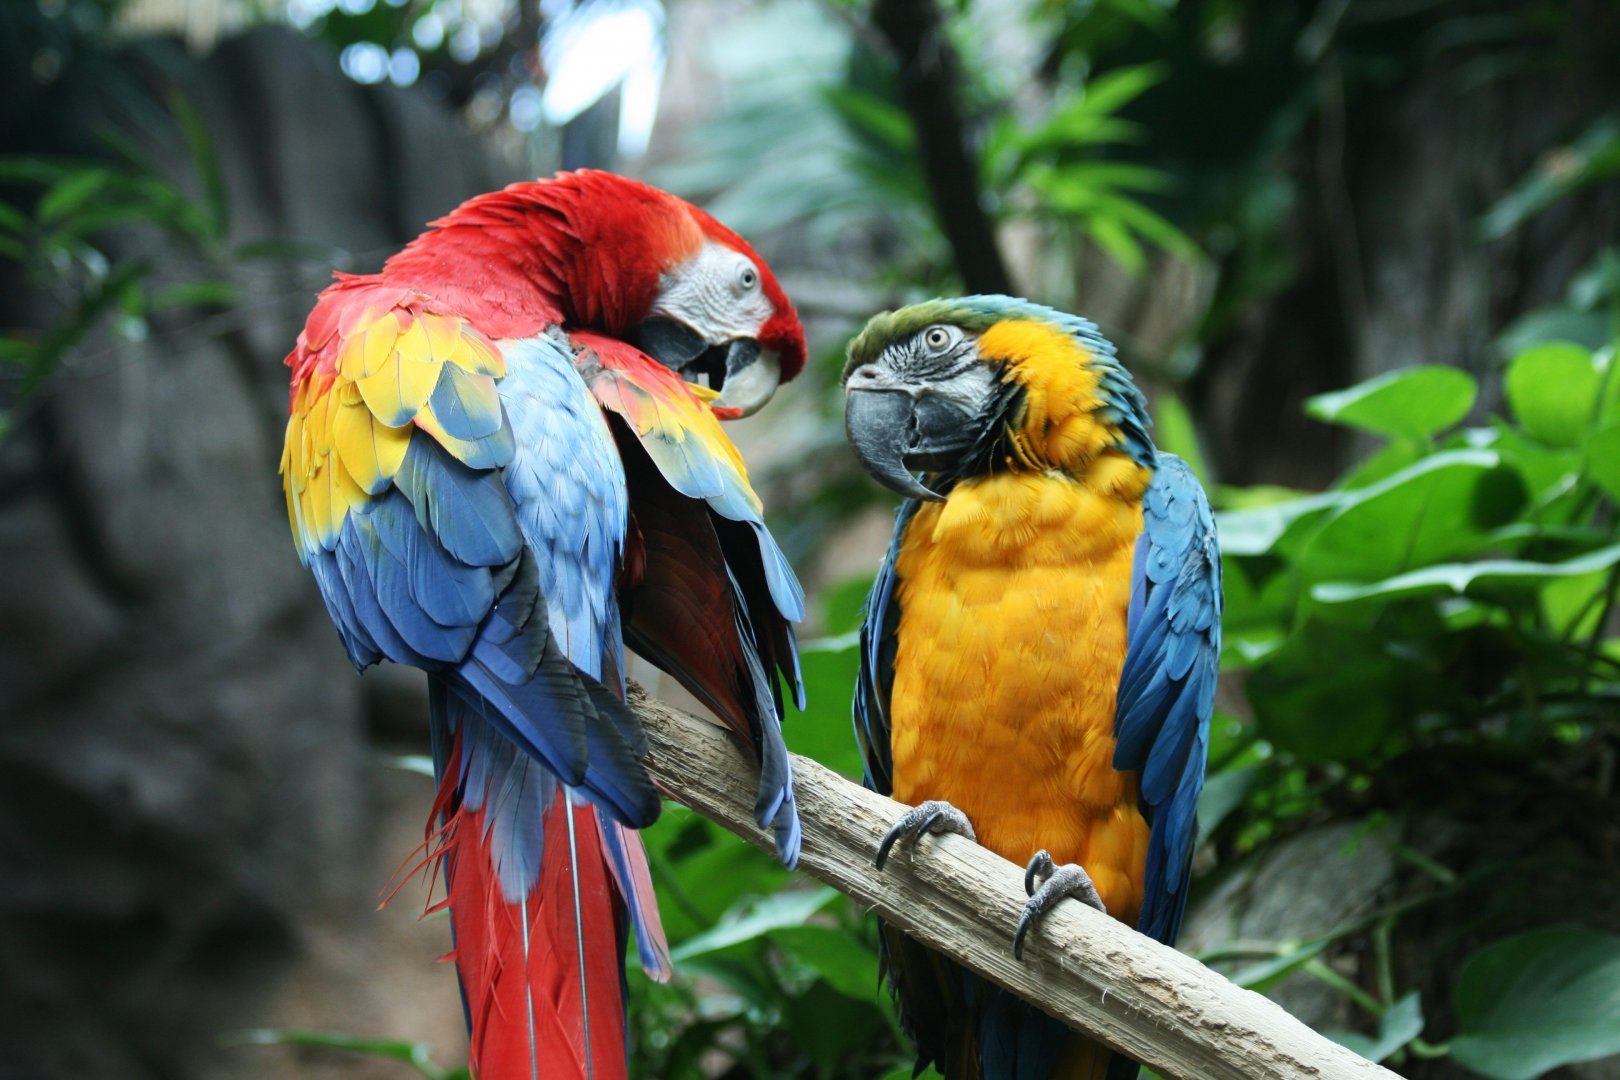 macaw_parrot_bird_tropical__1__3888x2592.jpg